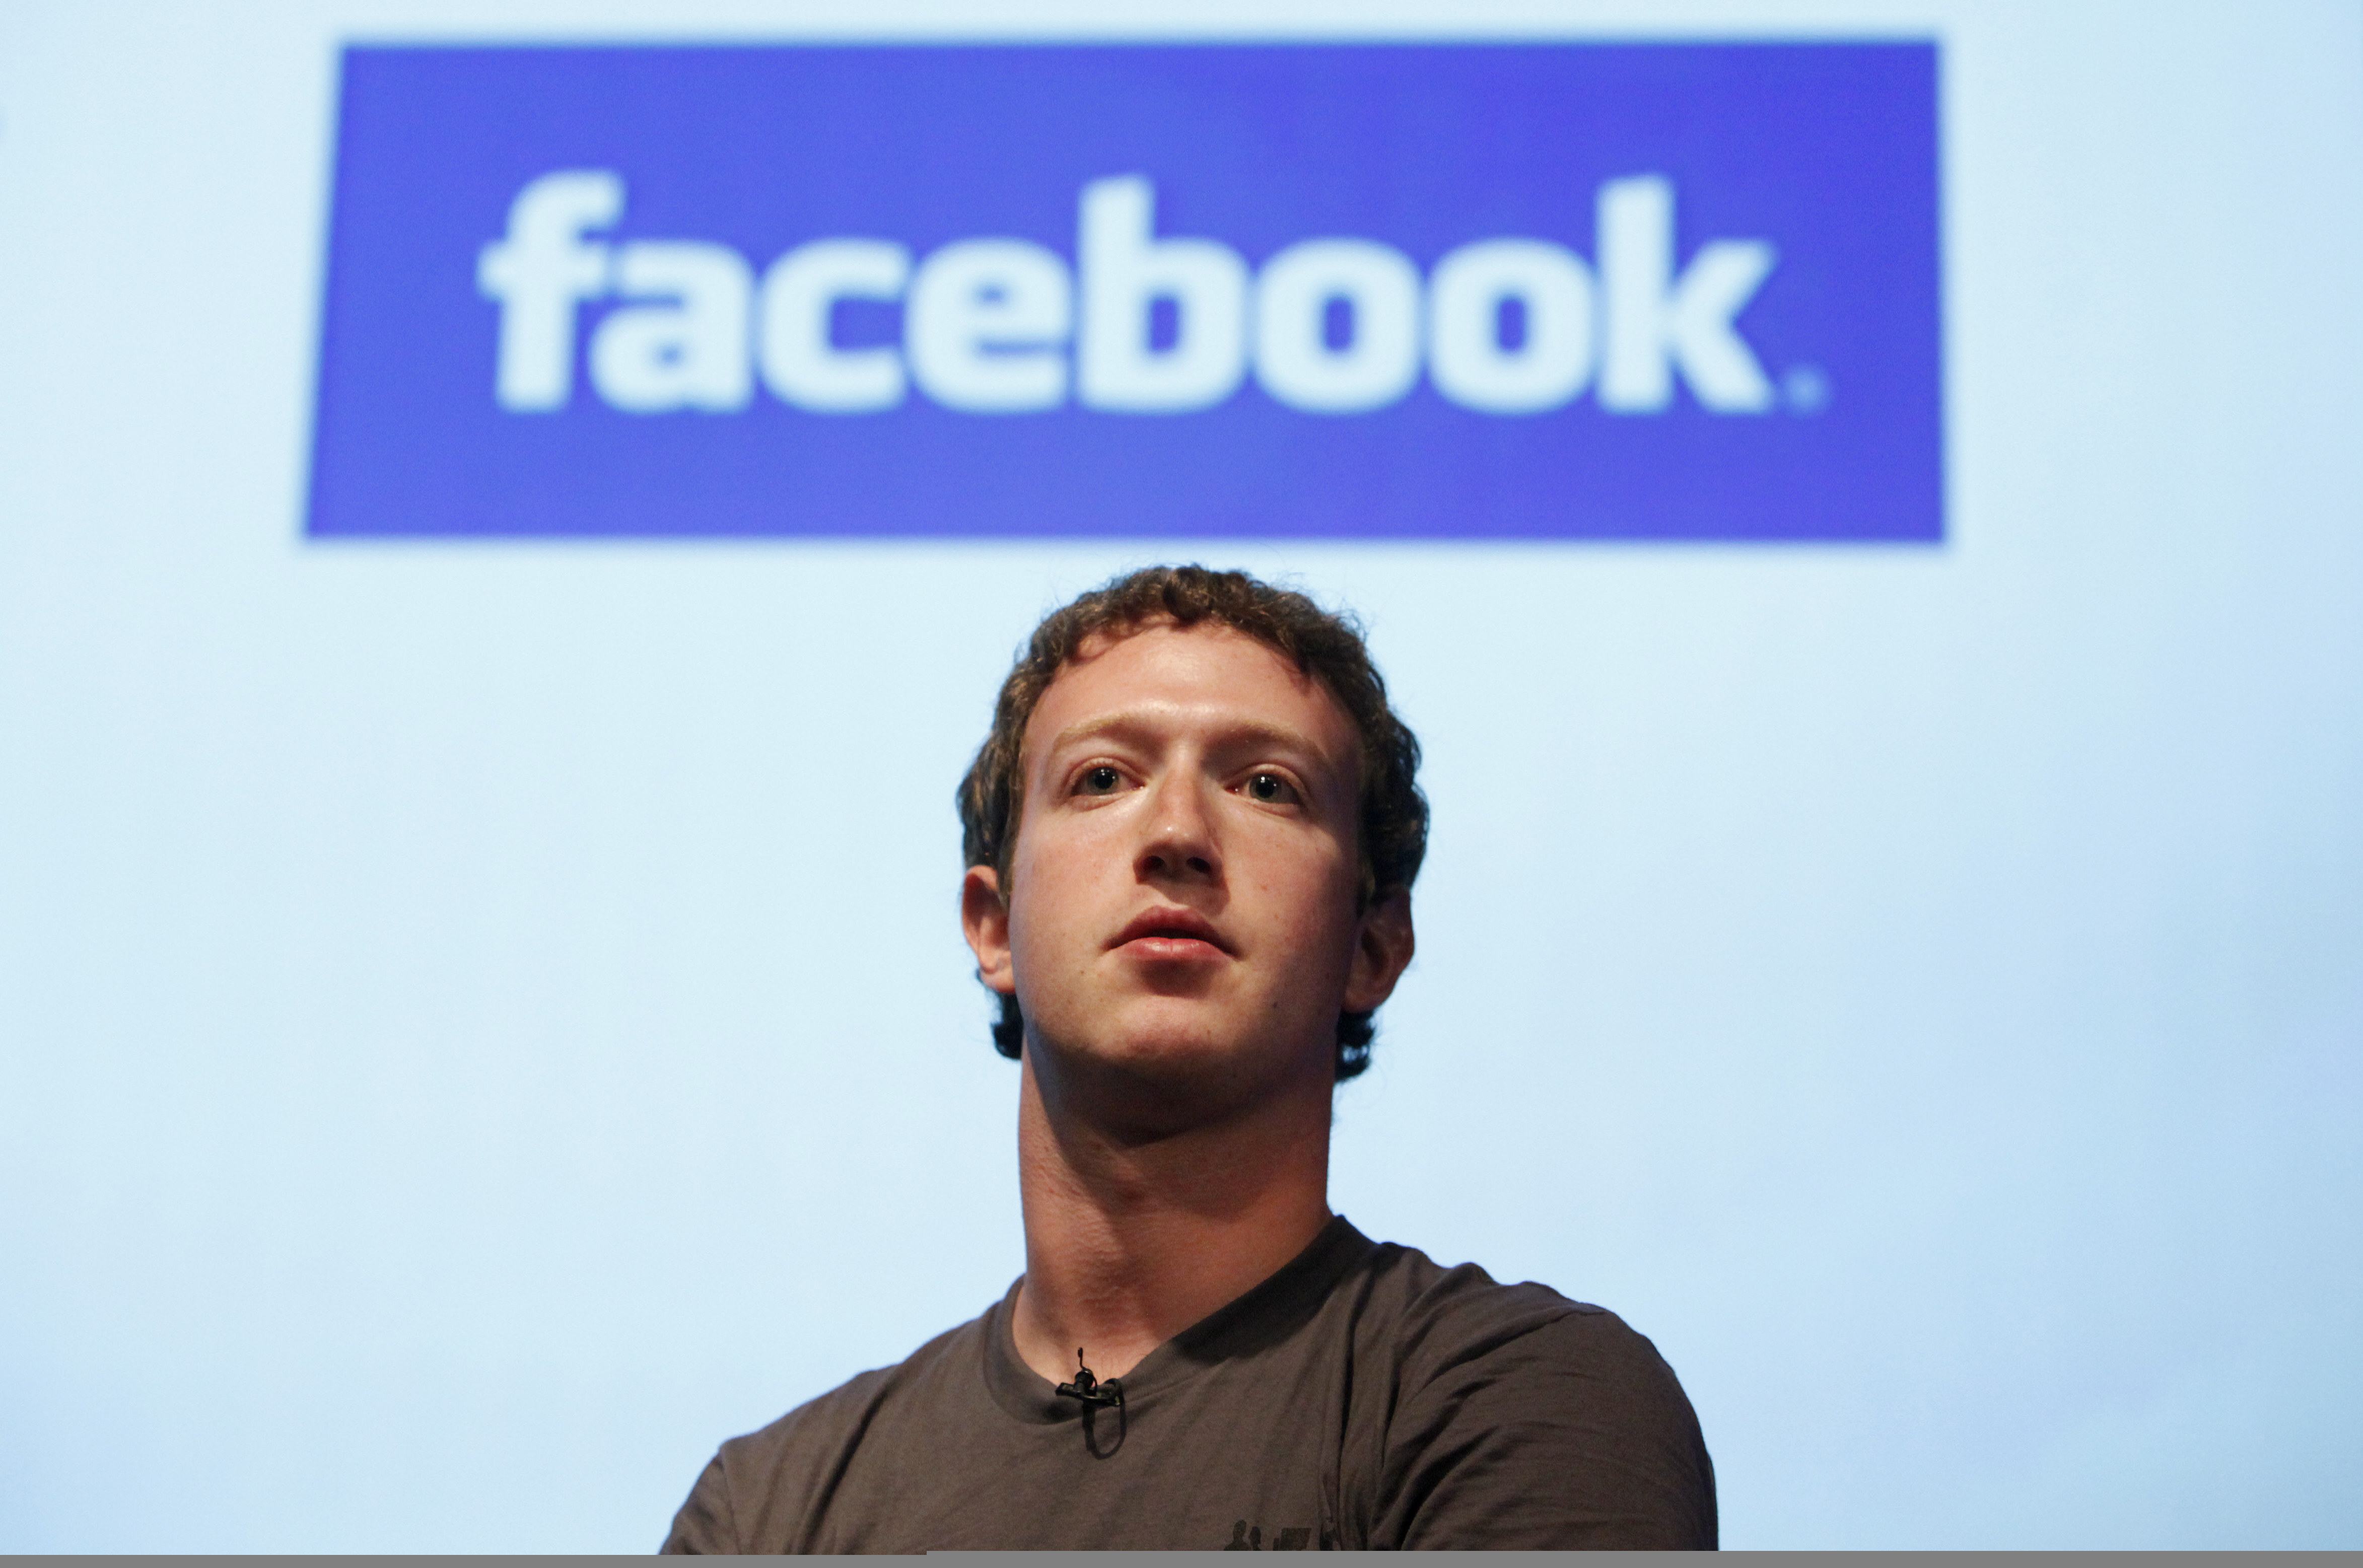 Mark Zuckerberg, Ekonomi, Internet, Sociala Medier, Indien, USA, Brasilien, Facebook, Börsnotering